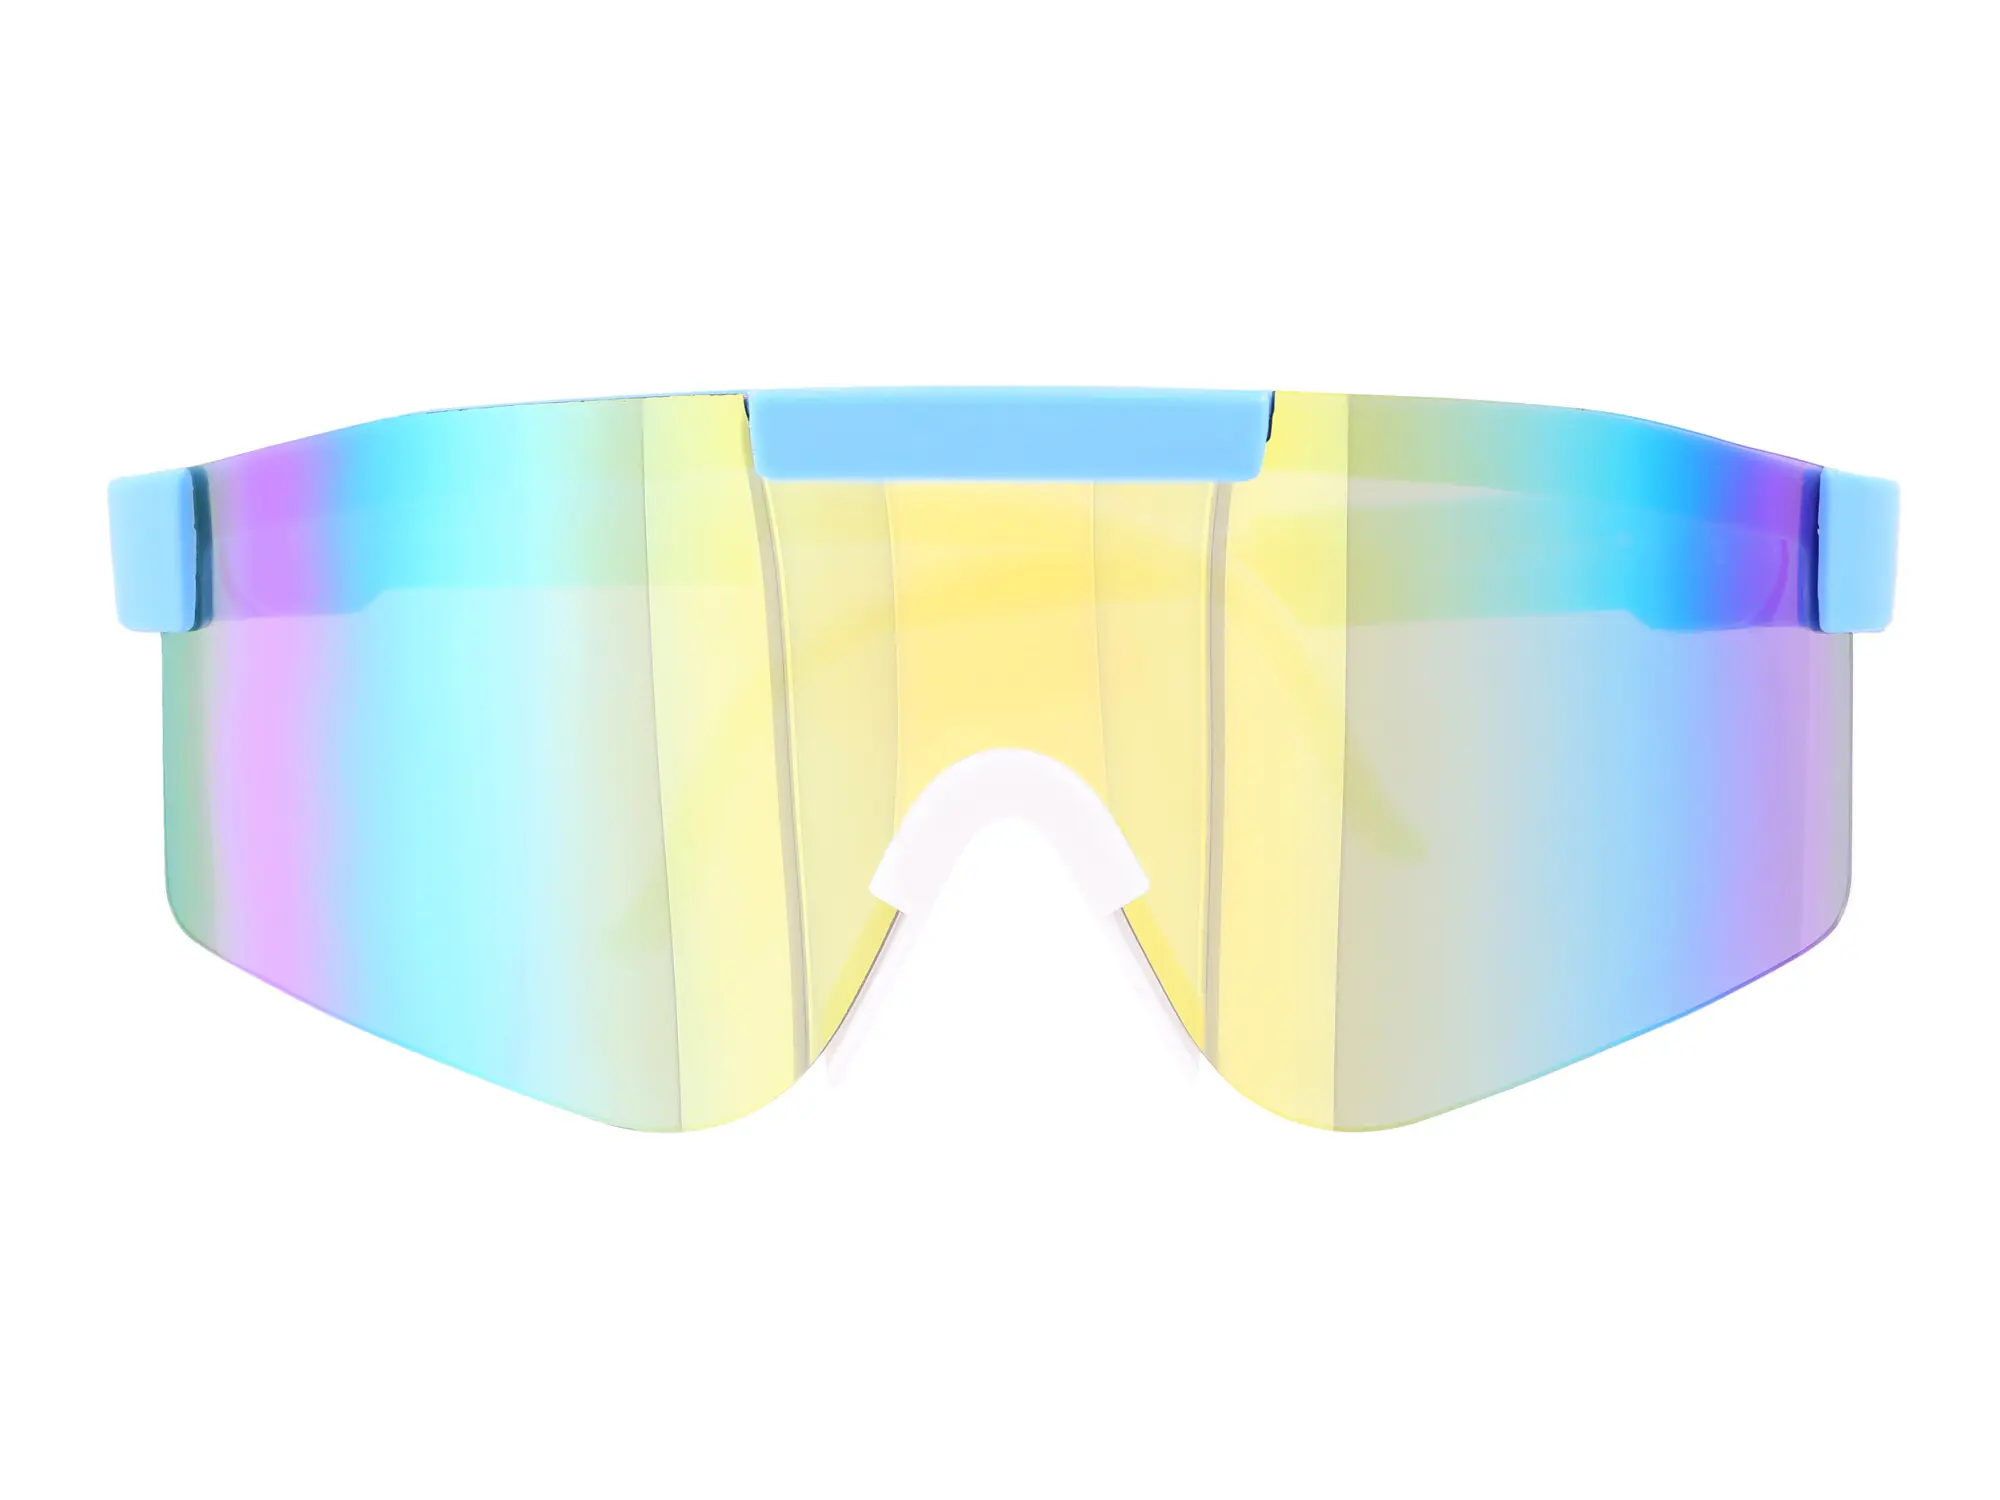 Sonnenbrille "extra Schnell" - Gelb / Blau verspiegelt, Art.-Nr.: 10077893 - Bild 1